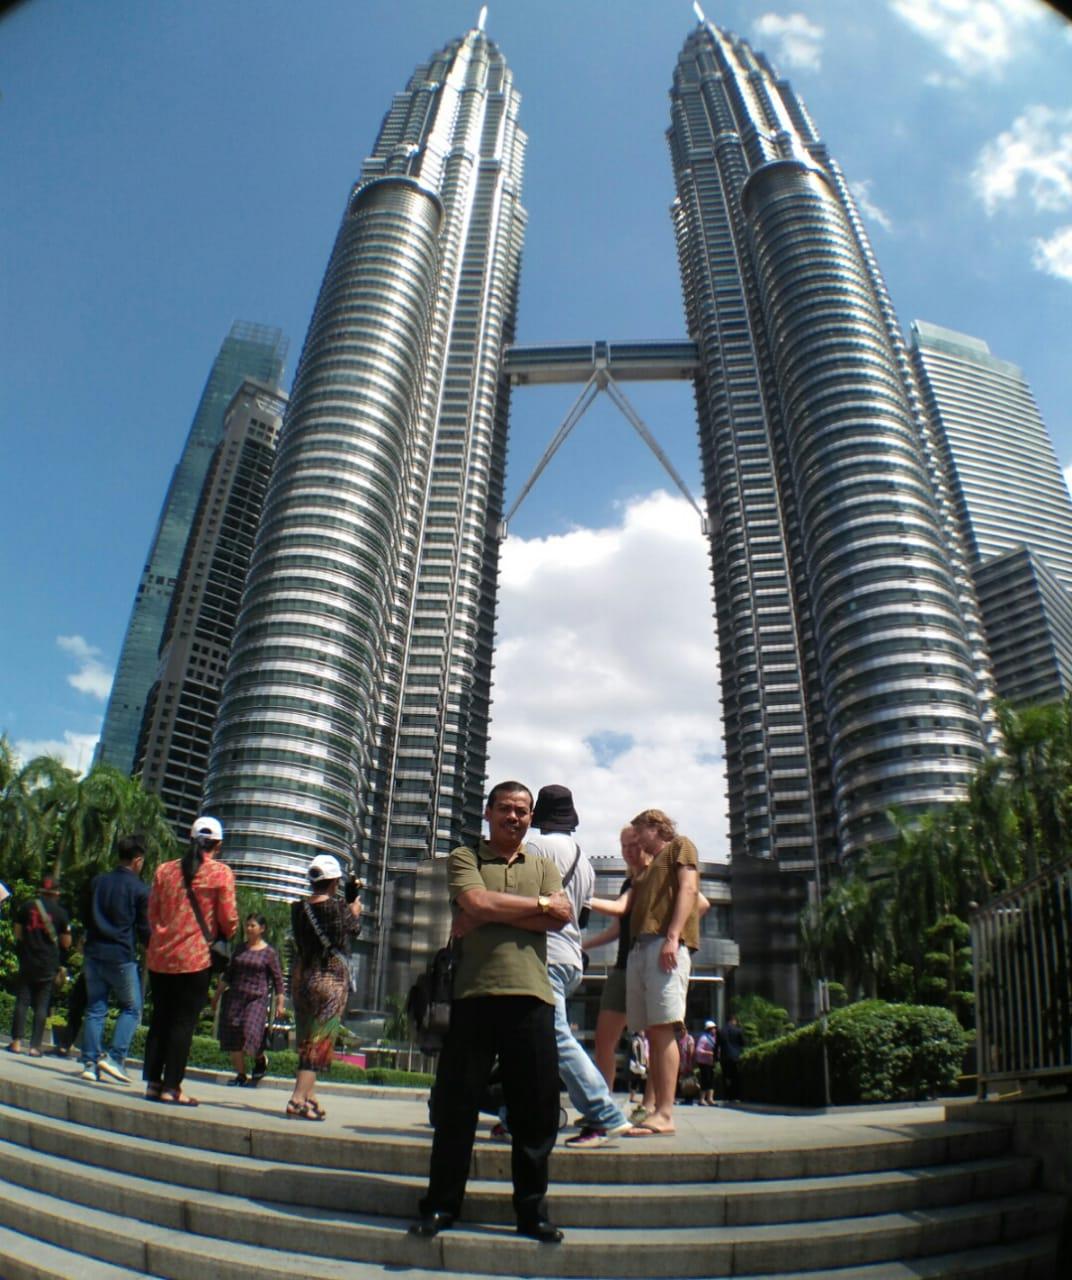 Menara kembar di malaysia